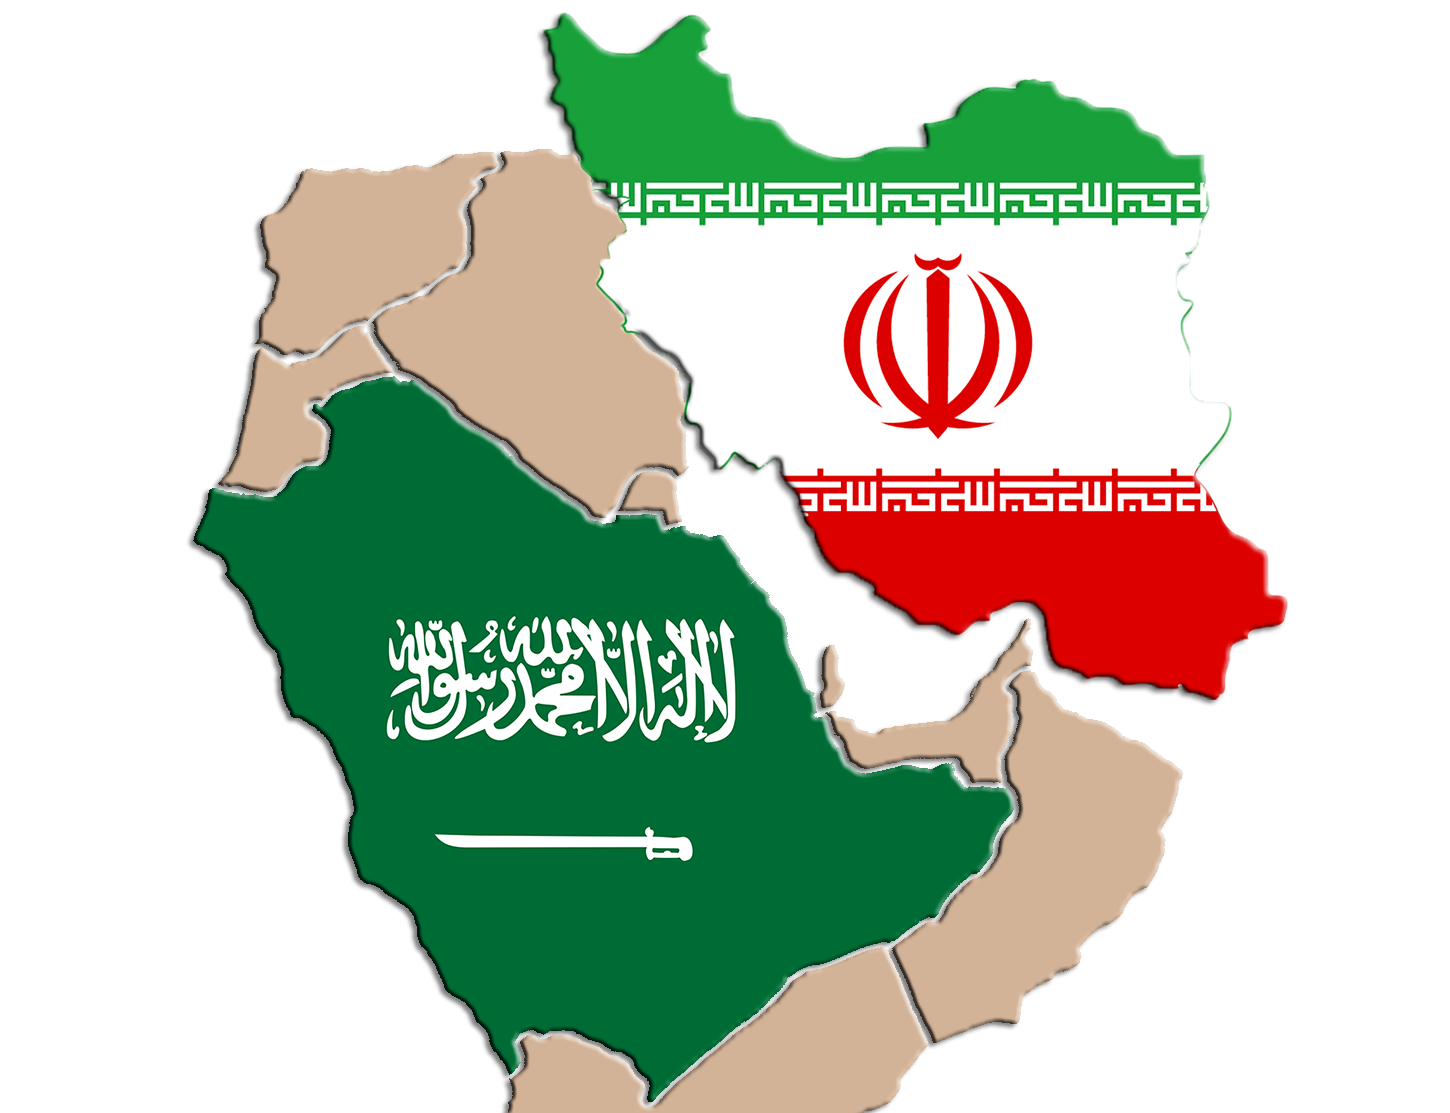 امکان توافق ایران و عربستان در مورد سوریه، عراق یا لبنان و حتی موضوع هسته ای وجود دارد.  سخت ترین مسئله جنگ یمن است